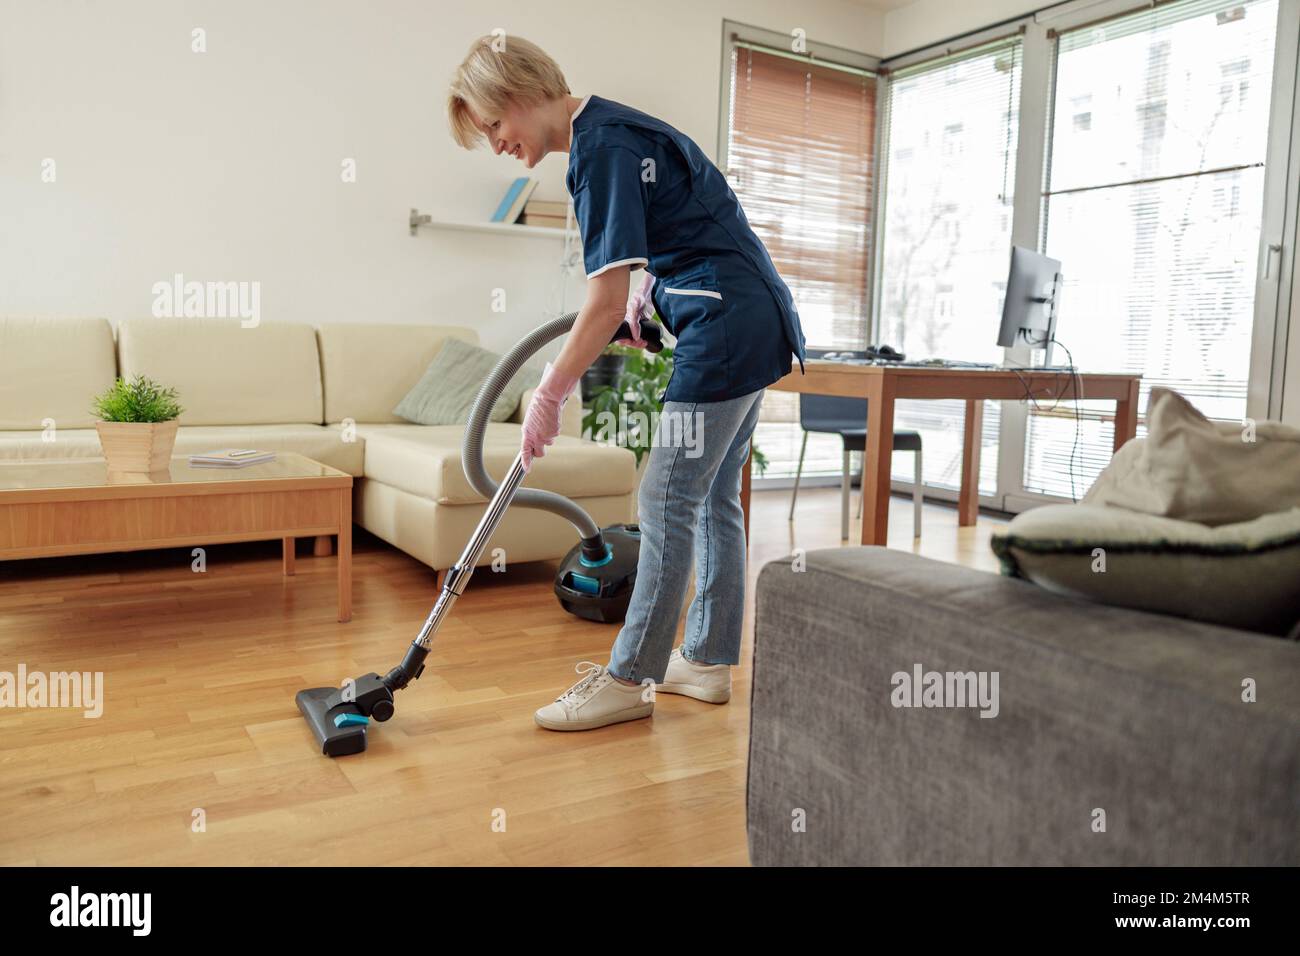 Professionelle Putzfrau trägt Uniform und saugt den Boden im Wohnzimmer Stockfoto